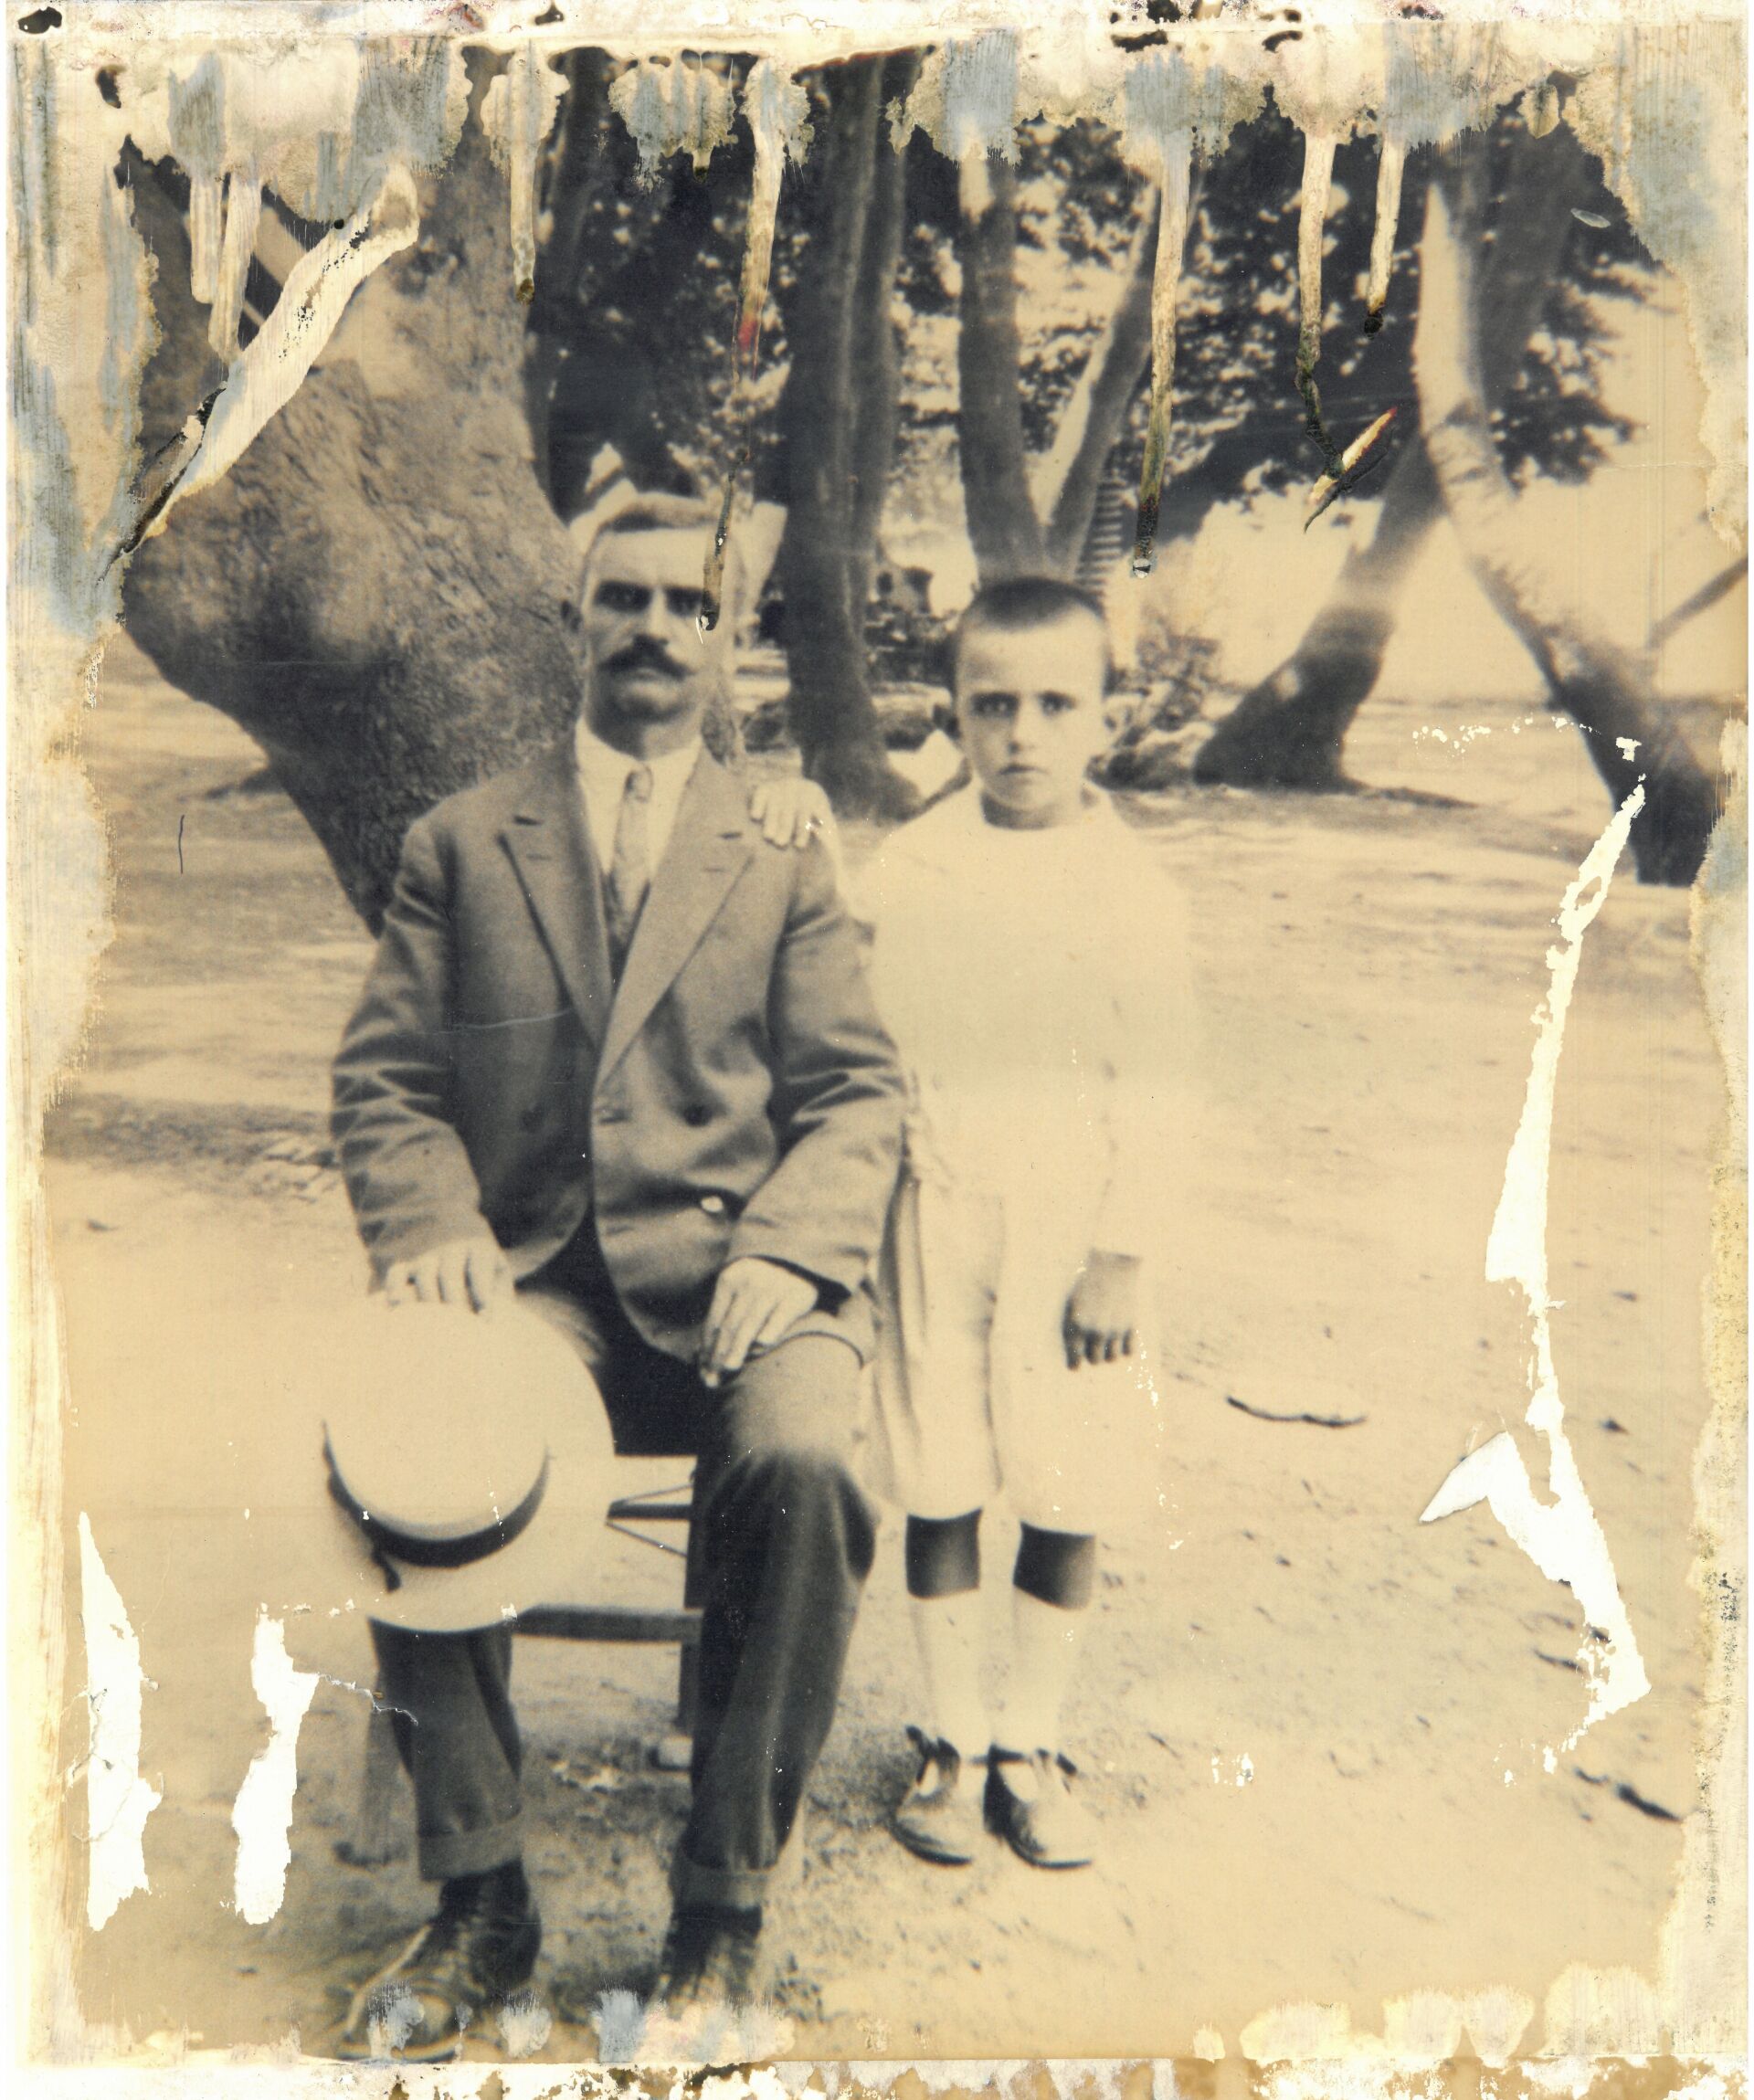 1η και 2η γενια: Προπάππους Κώσταντίνος με παππού Γιάννη